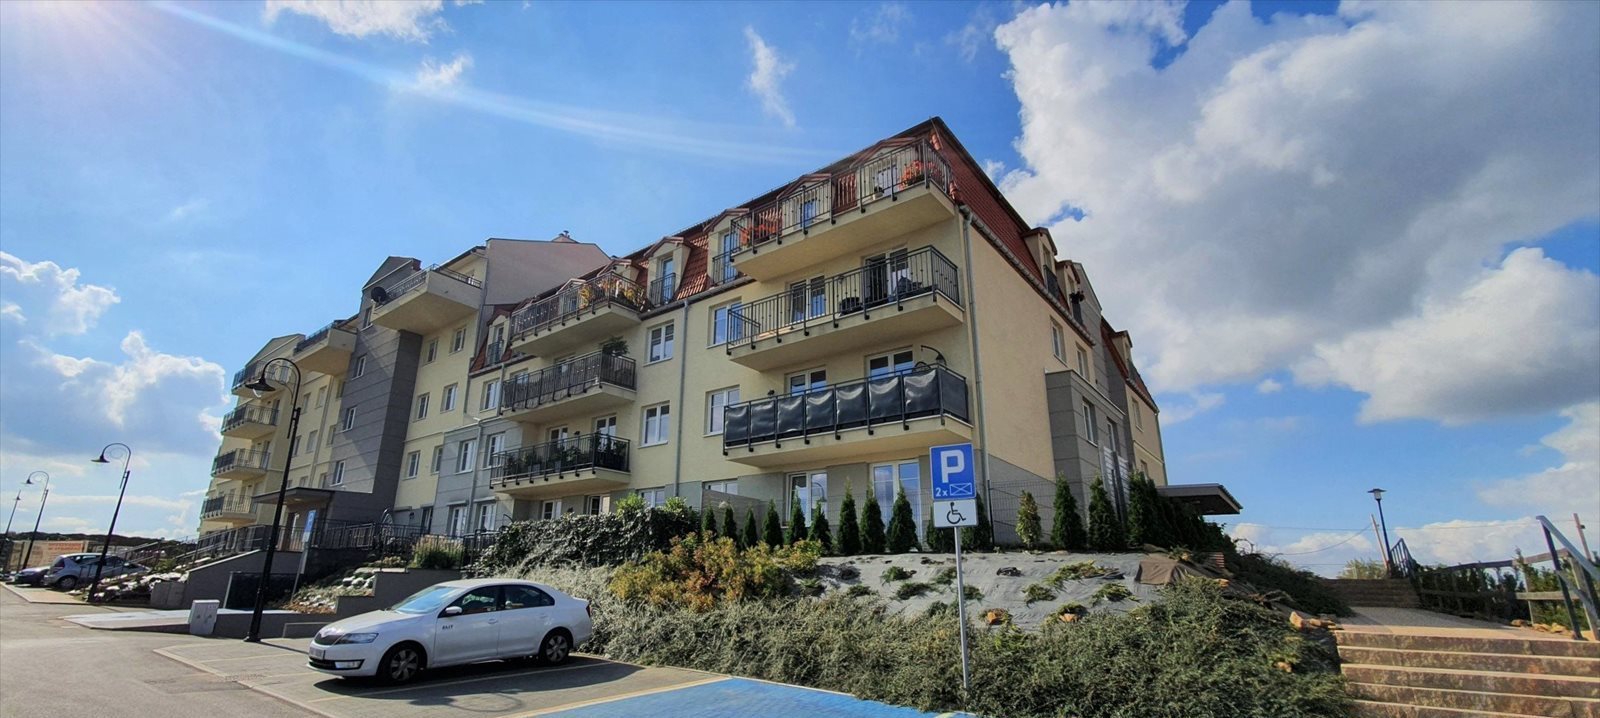 Mieszkanie trzypokojowe na sprzedaż Sosnowiec, Sielec, Apartamenty Słoneczne, Klimontowska 47  65m2 Foto 9